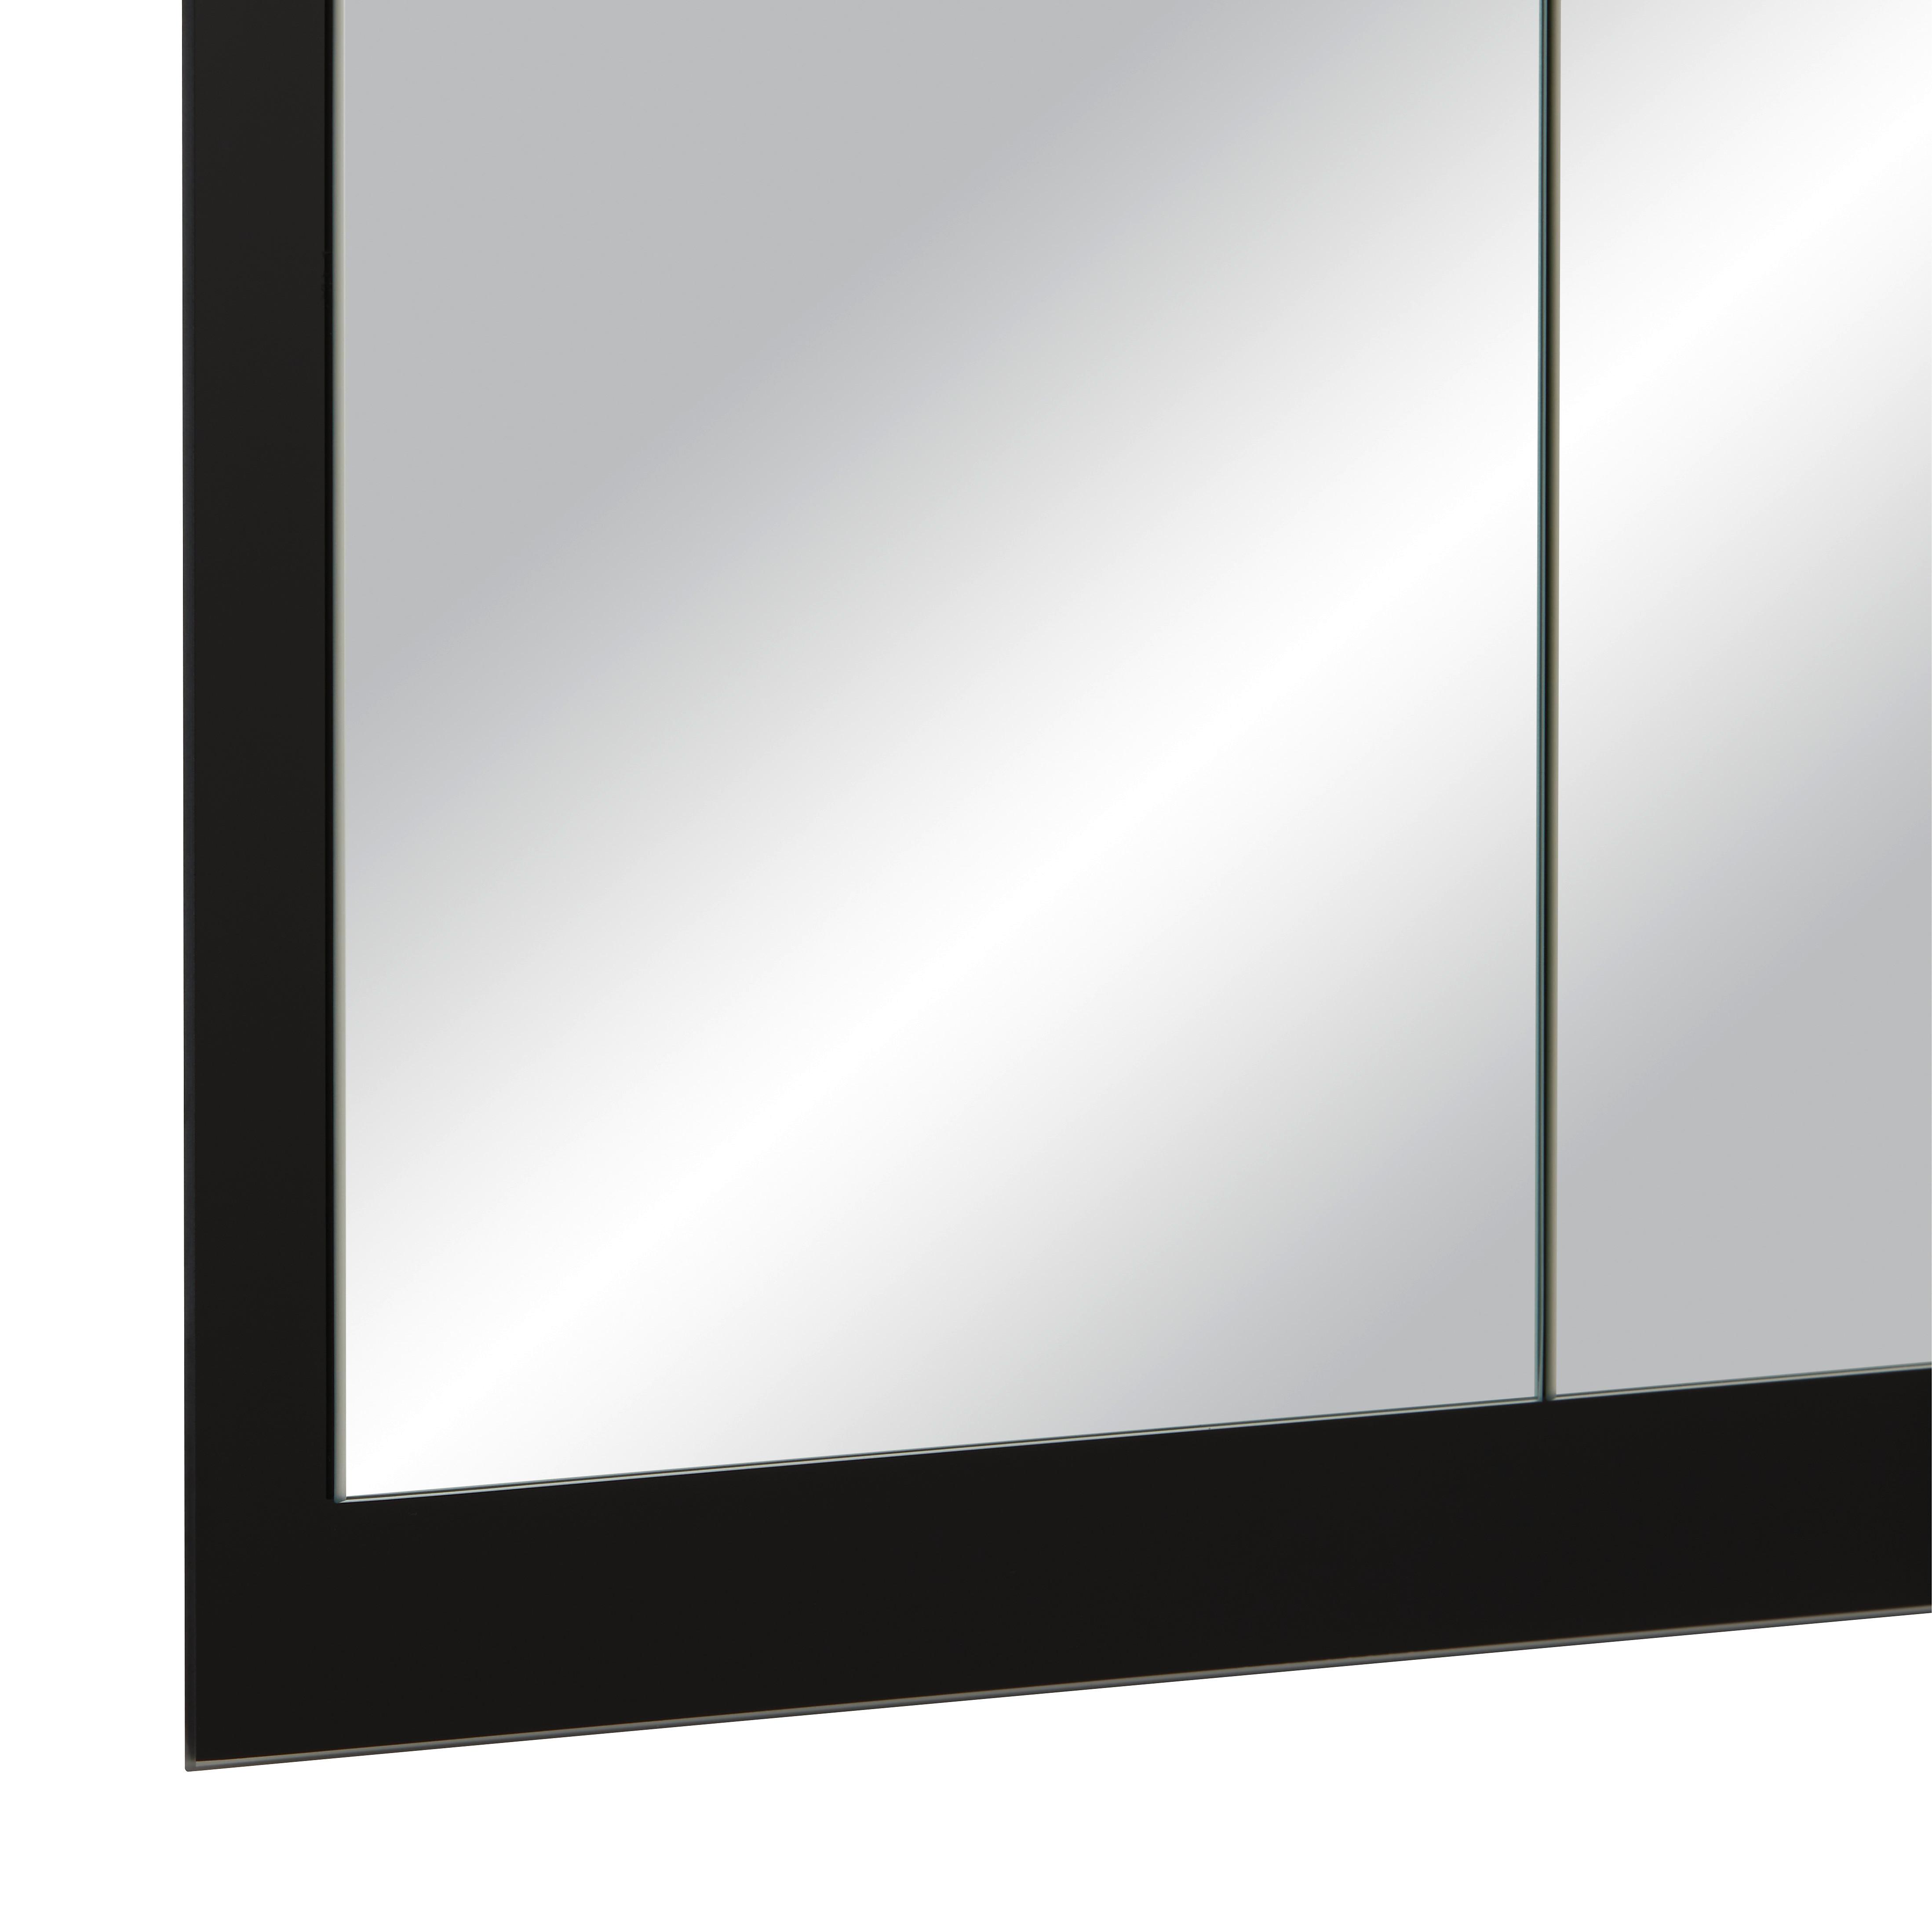 Stensko Ogledalo Industrial, 64 X 104 Cm - črna, Moderno, steklo (64/104cm) - Modern Living